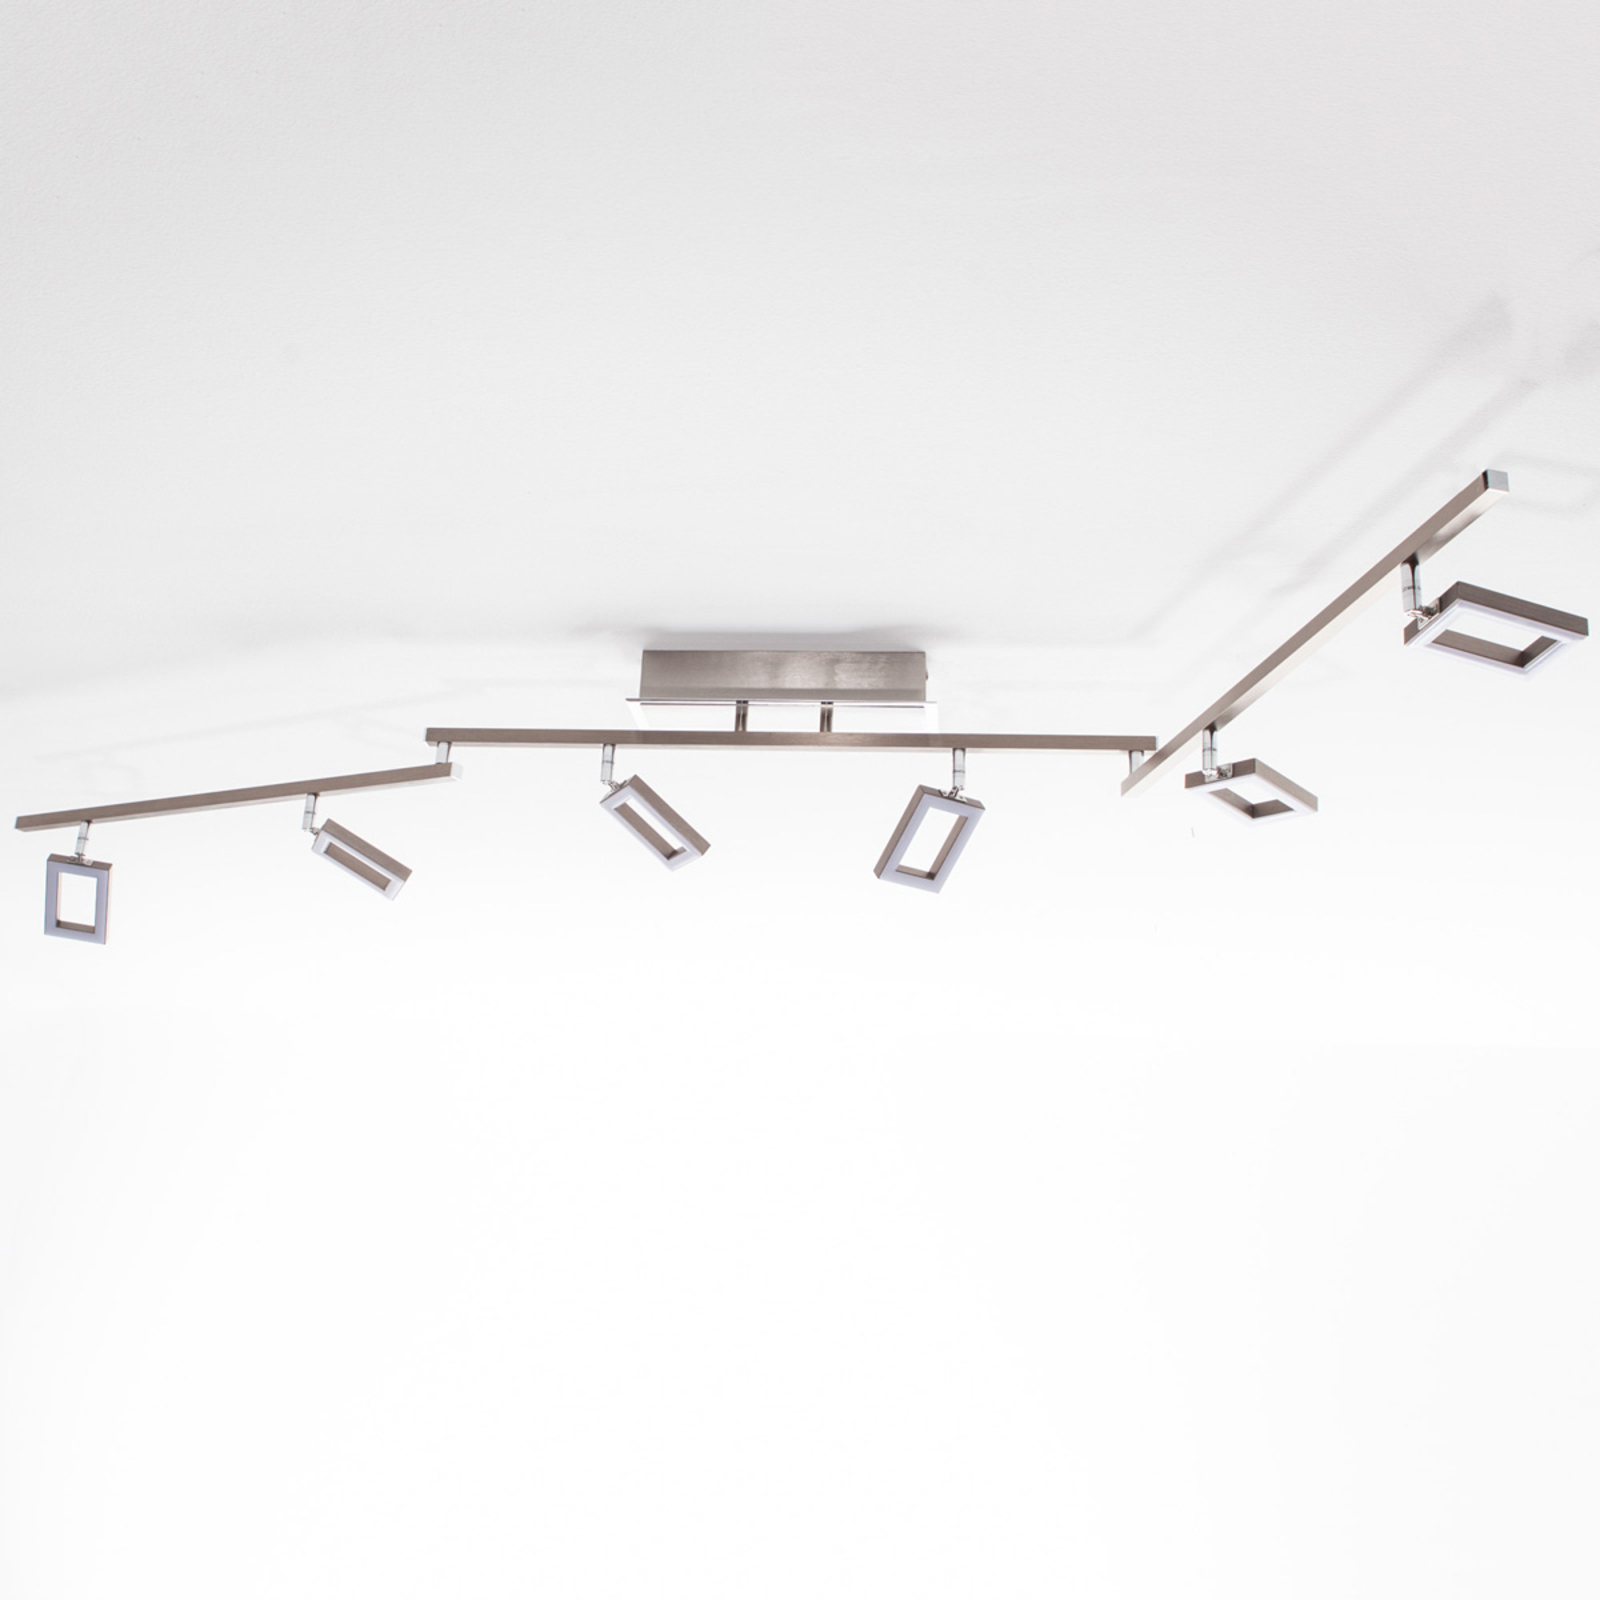 Šešių lempučių LED lubinis šviestuvas "Inigo